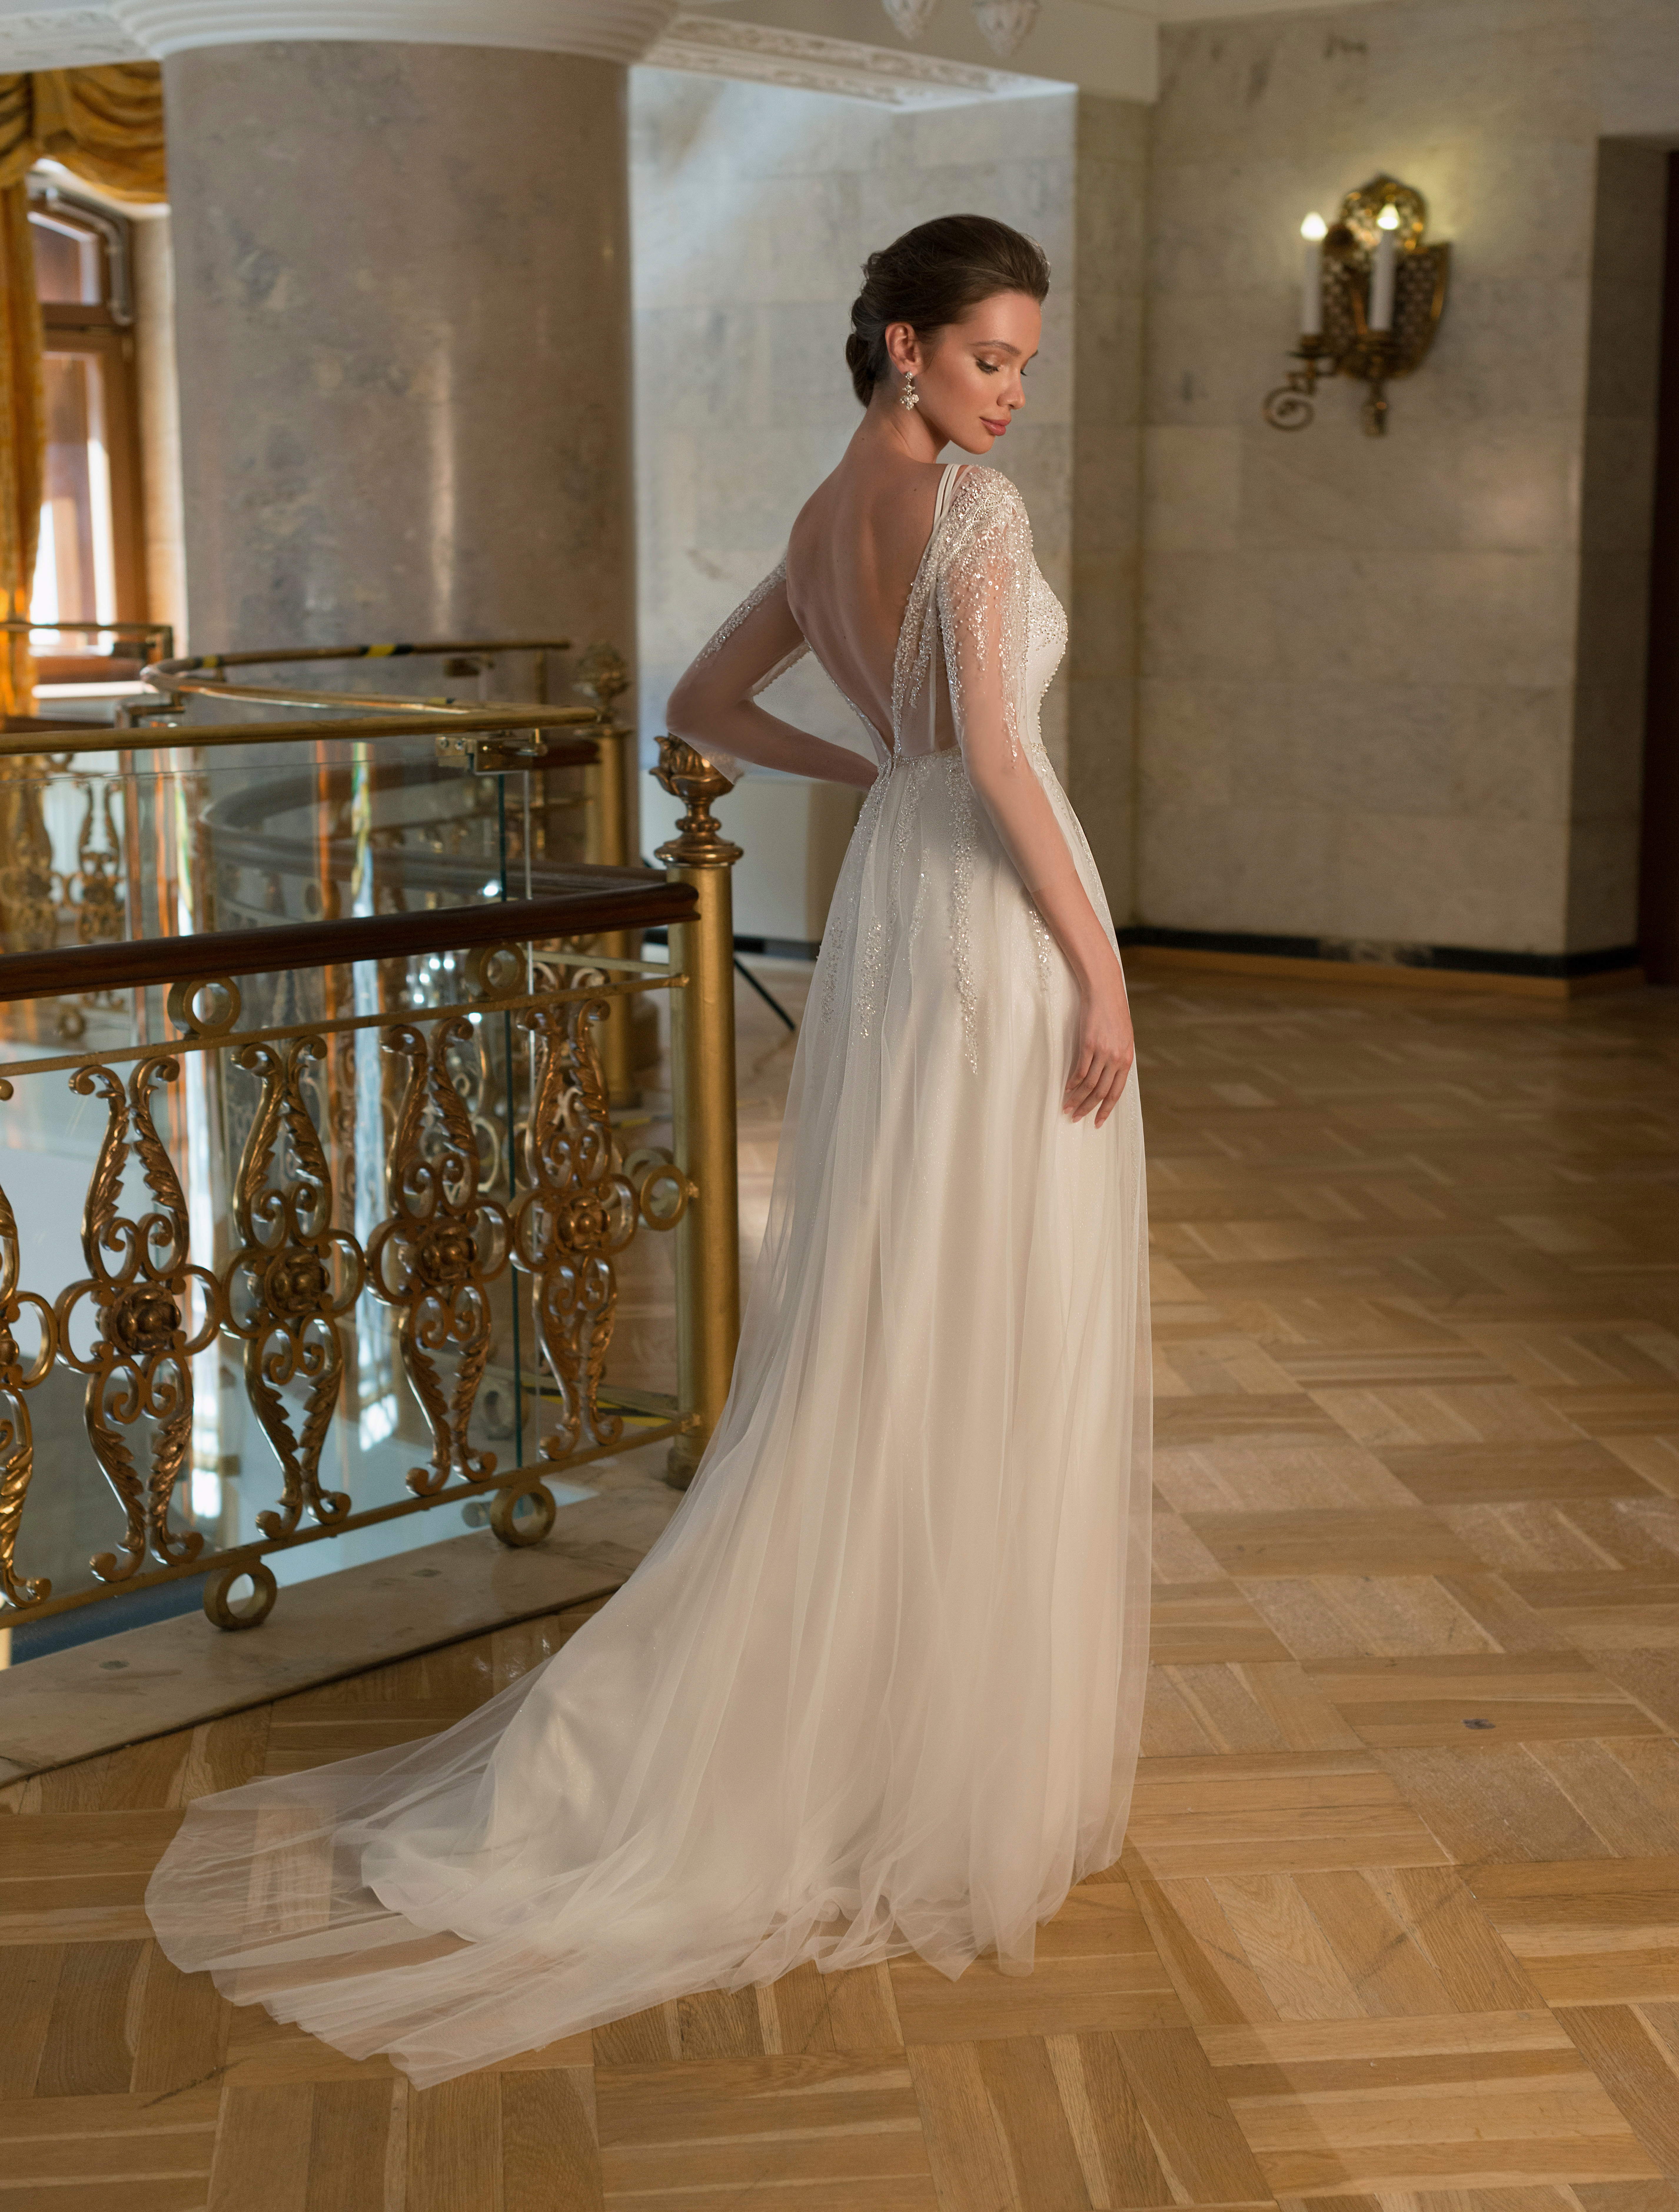 Купить свадебное платье «Эстер» Мэрри Марк из коллекции 2022 года в Мэри Трюфель